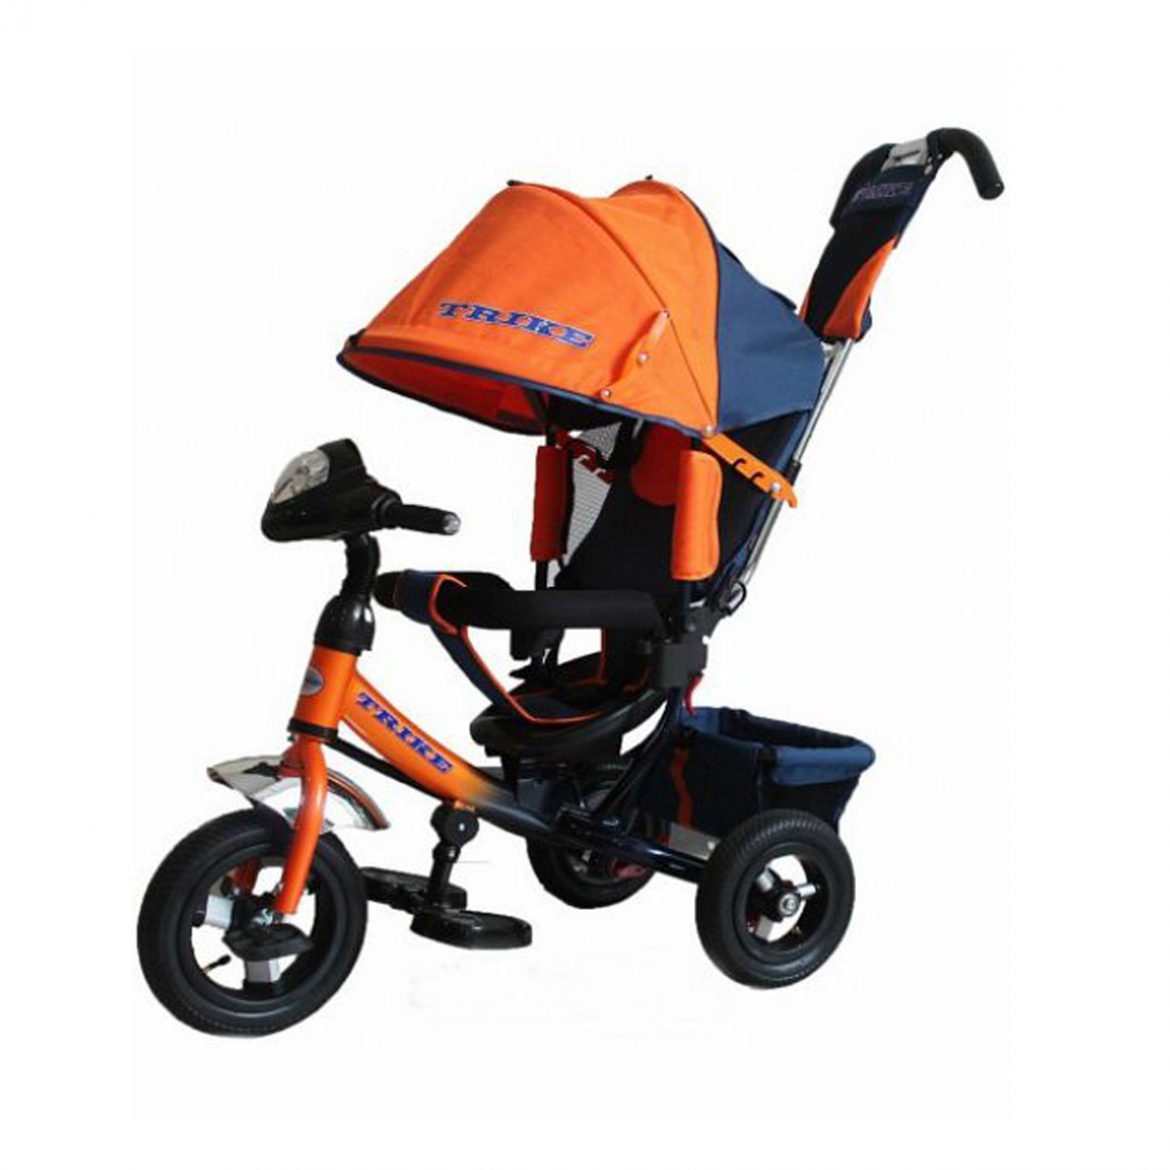 Велосипед трехколесный с ручкой с надувными. Trike tl3o. Велосипед капелла трехколесный с ручкой оранжевый. Kids Trike велосипед трехколесный оранжевый. Трехколесный велосипед Lexus Trike оранжевый.